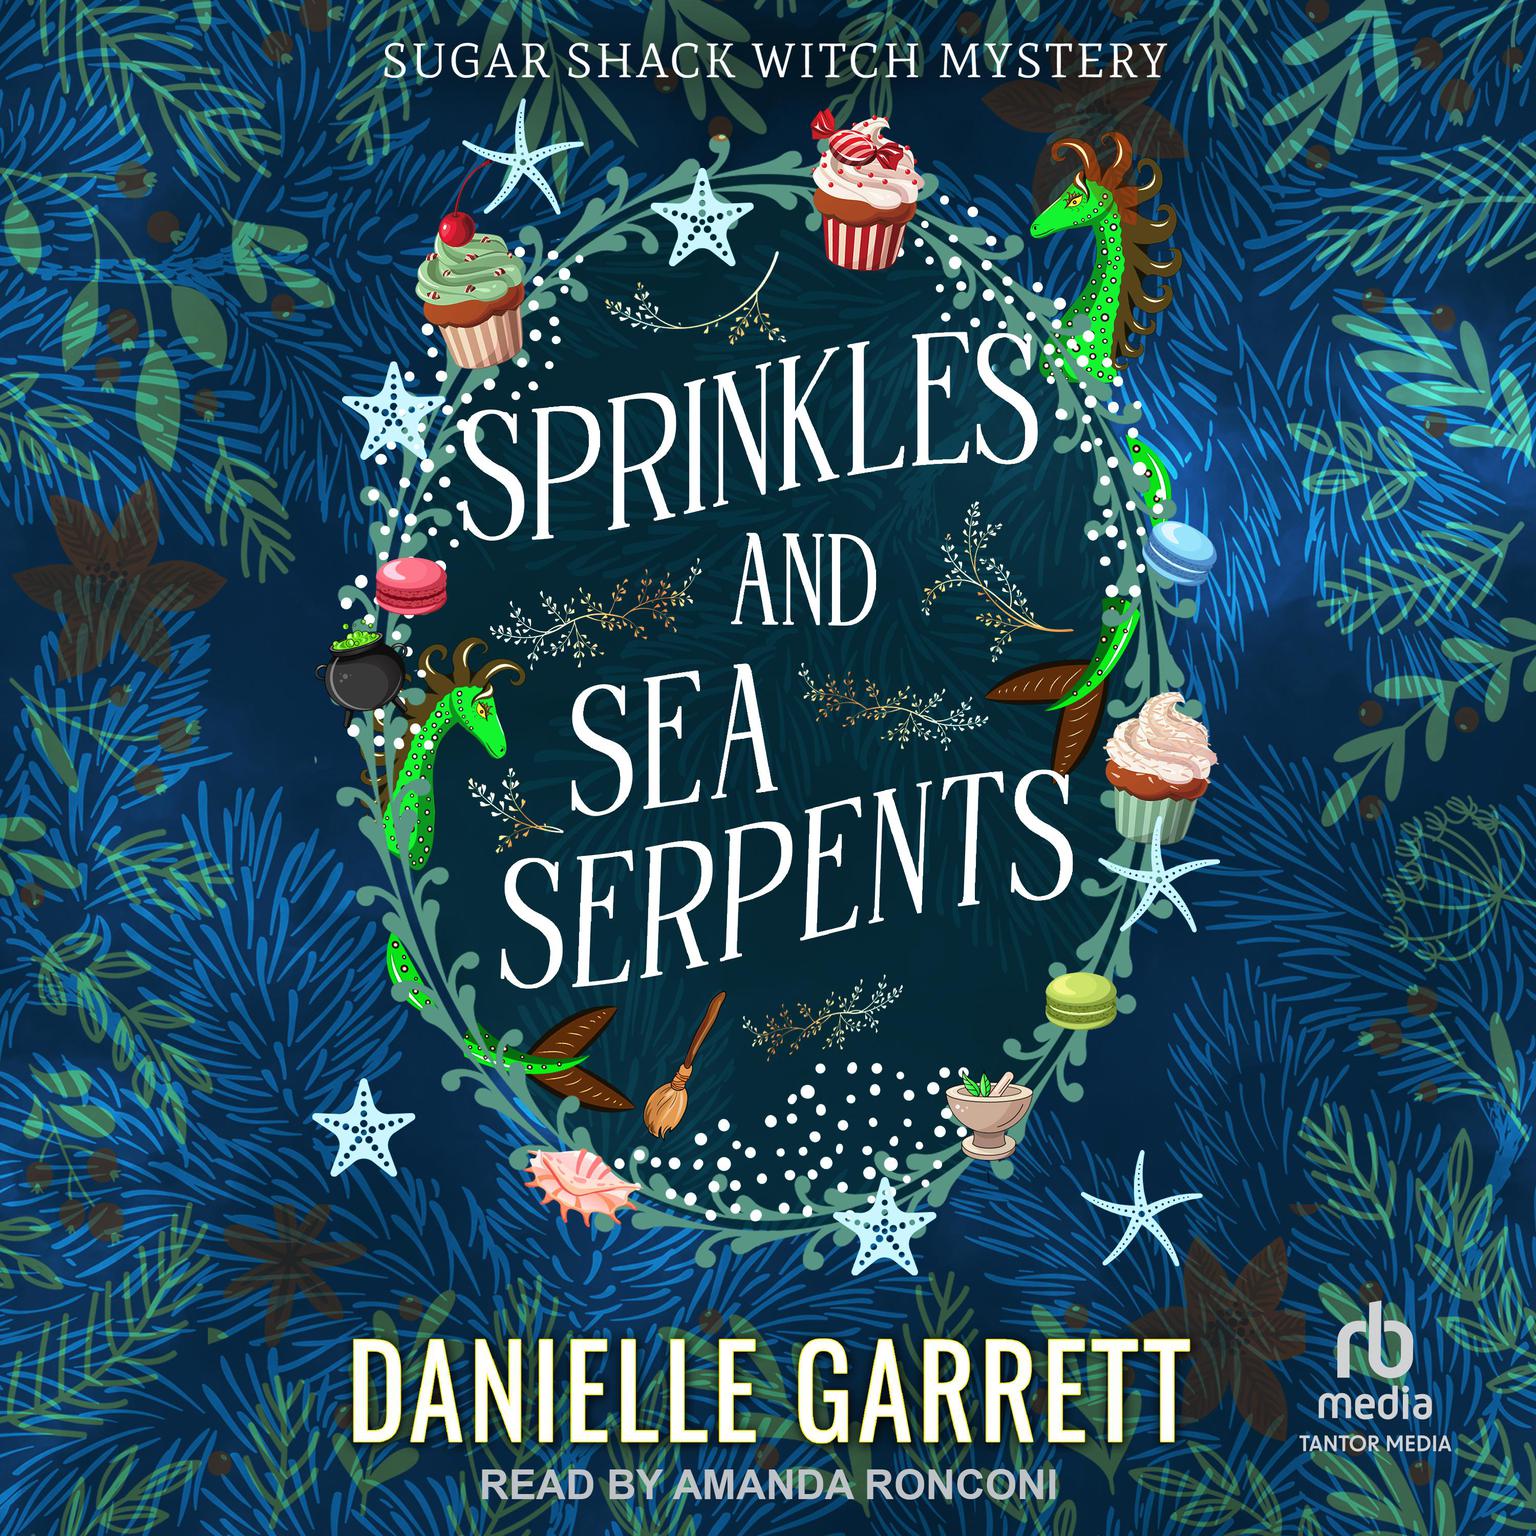 Sprinkles and Sea Serpents Audiobook, by Danielle Garrett